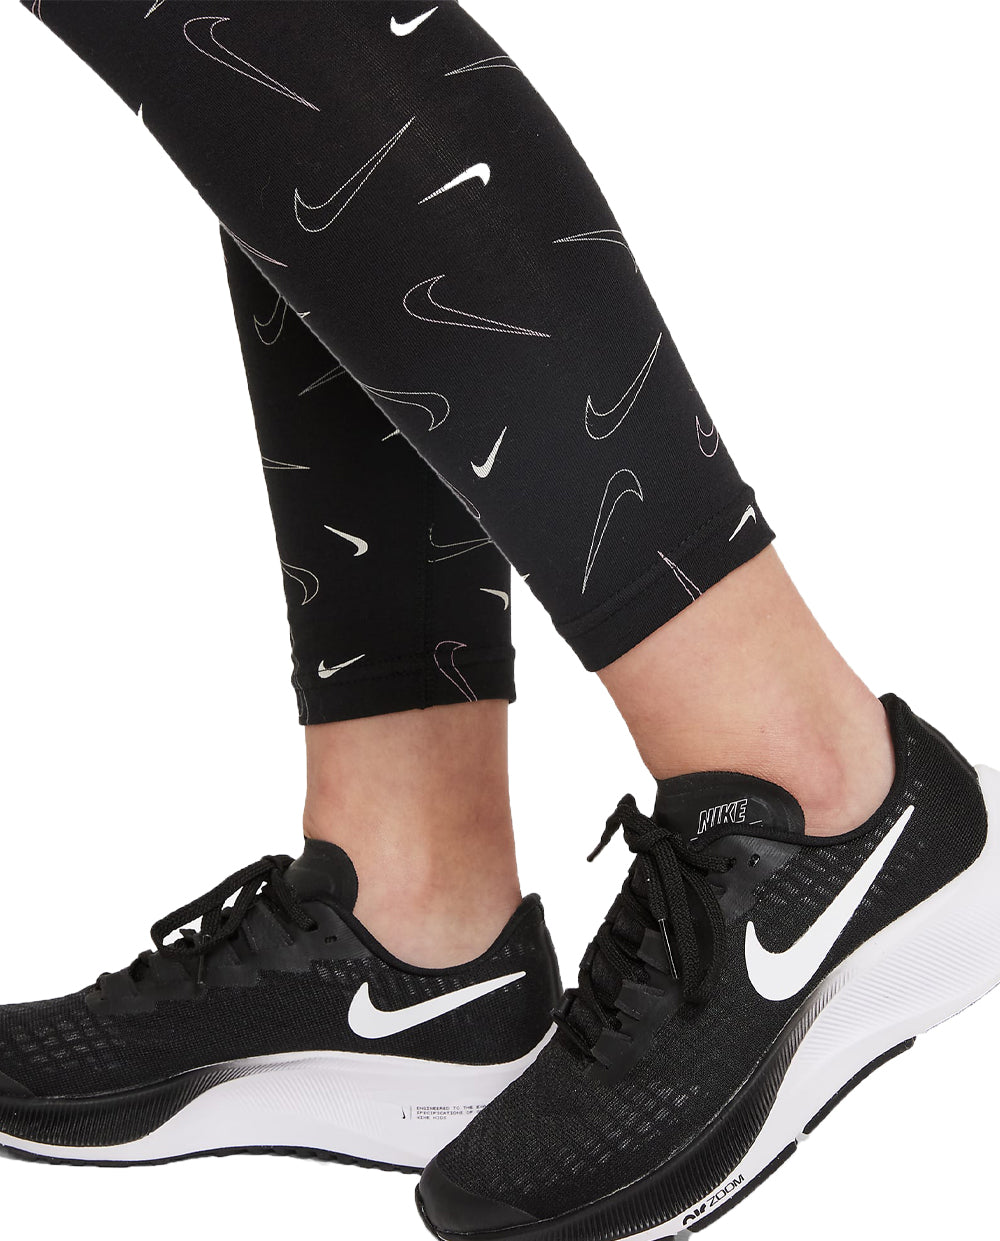 Leggings Nike Pretas com Branco